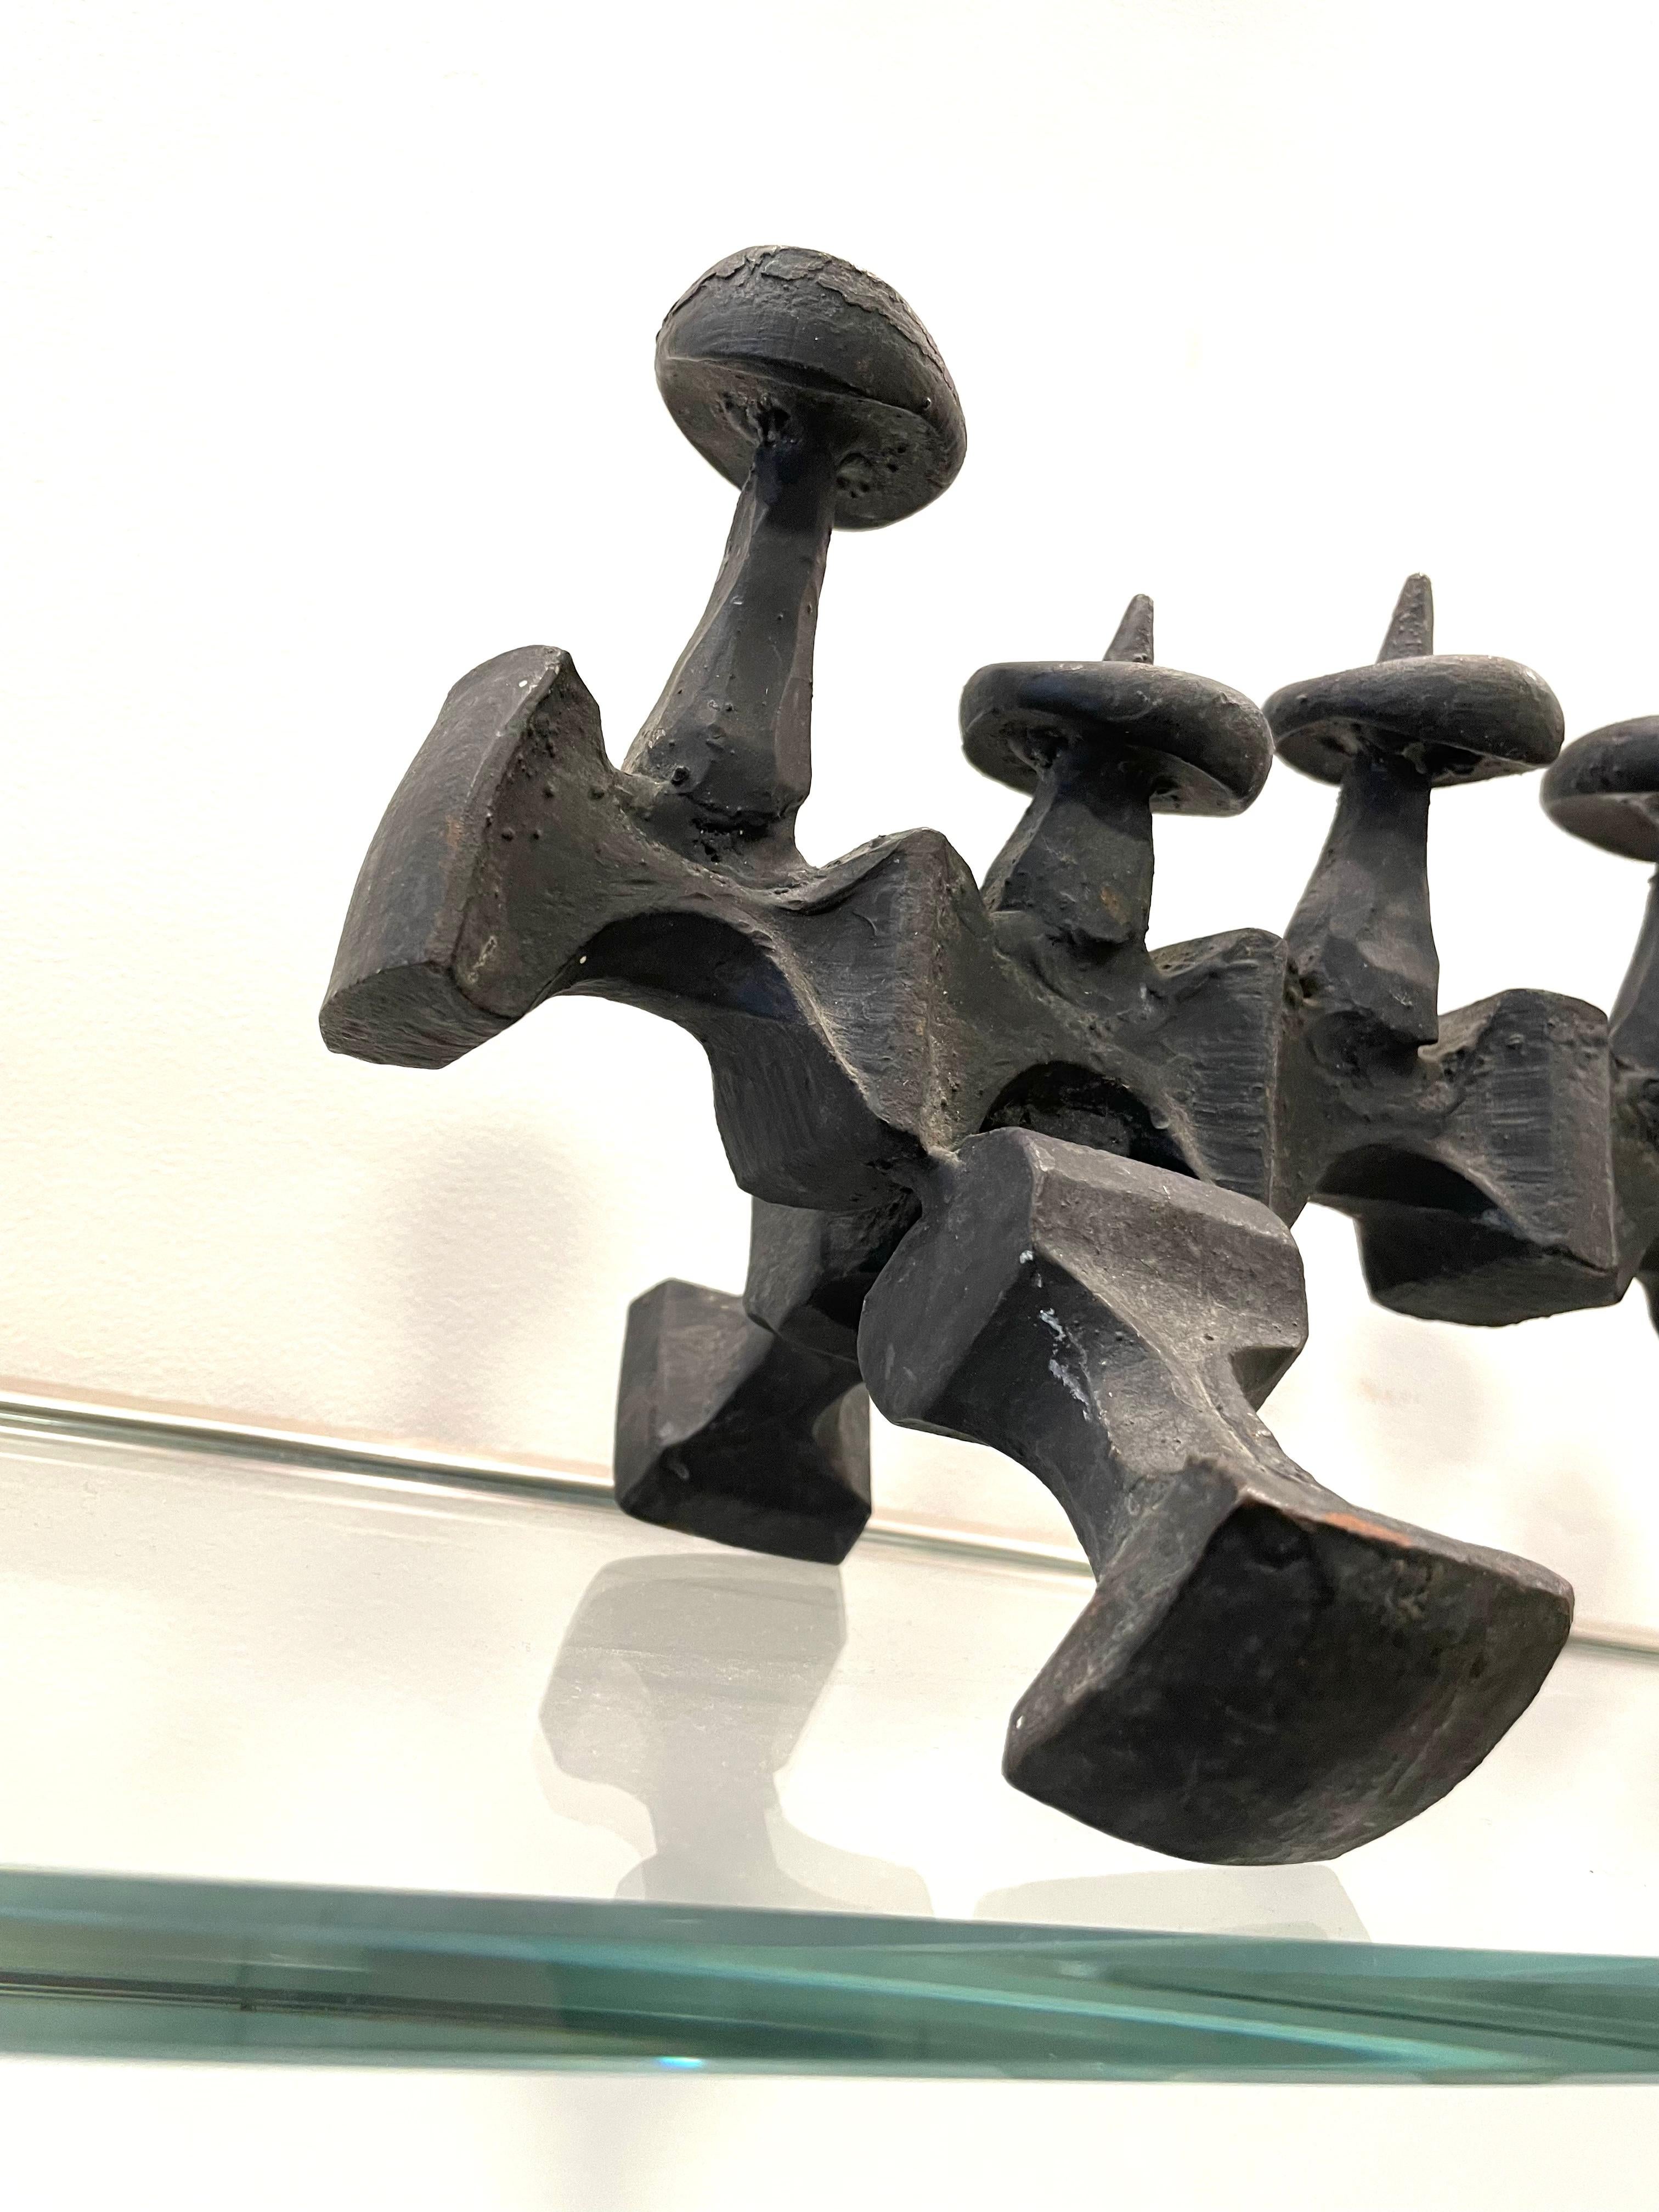 Une lampe de Hanoukka de forme unique, fabriquée dans un style brutaliste par David Palombo. Impressionnante par sa masse, cette lampe de Hanoukka évoque des motifs ludiques, à la fois animaliers et anatomiques par nature. 

David Palombo